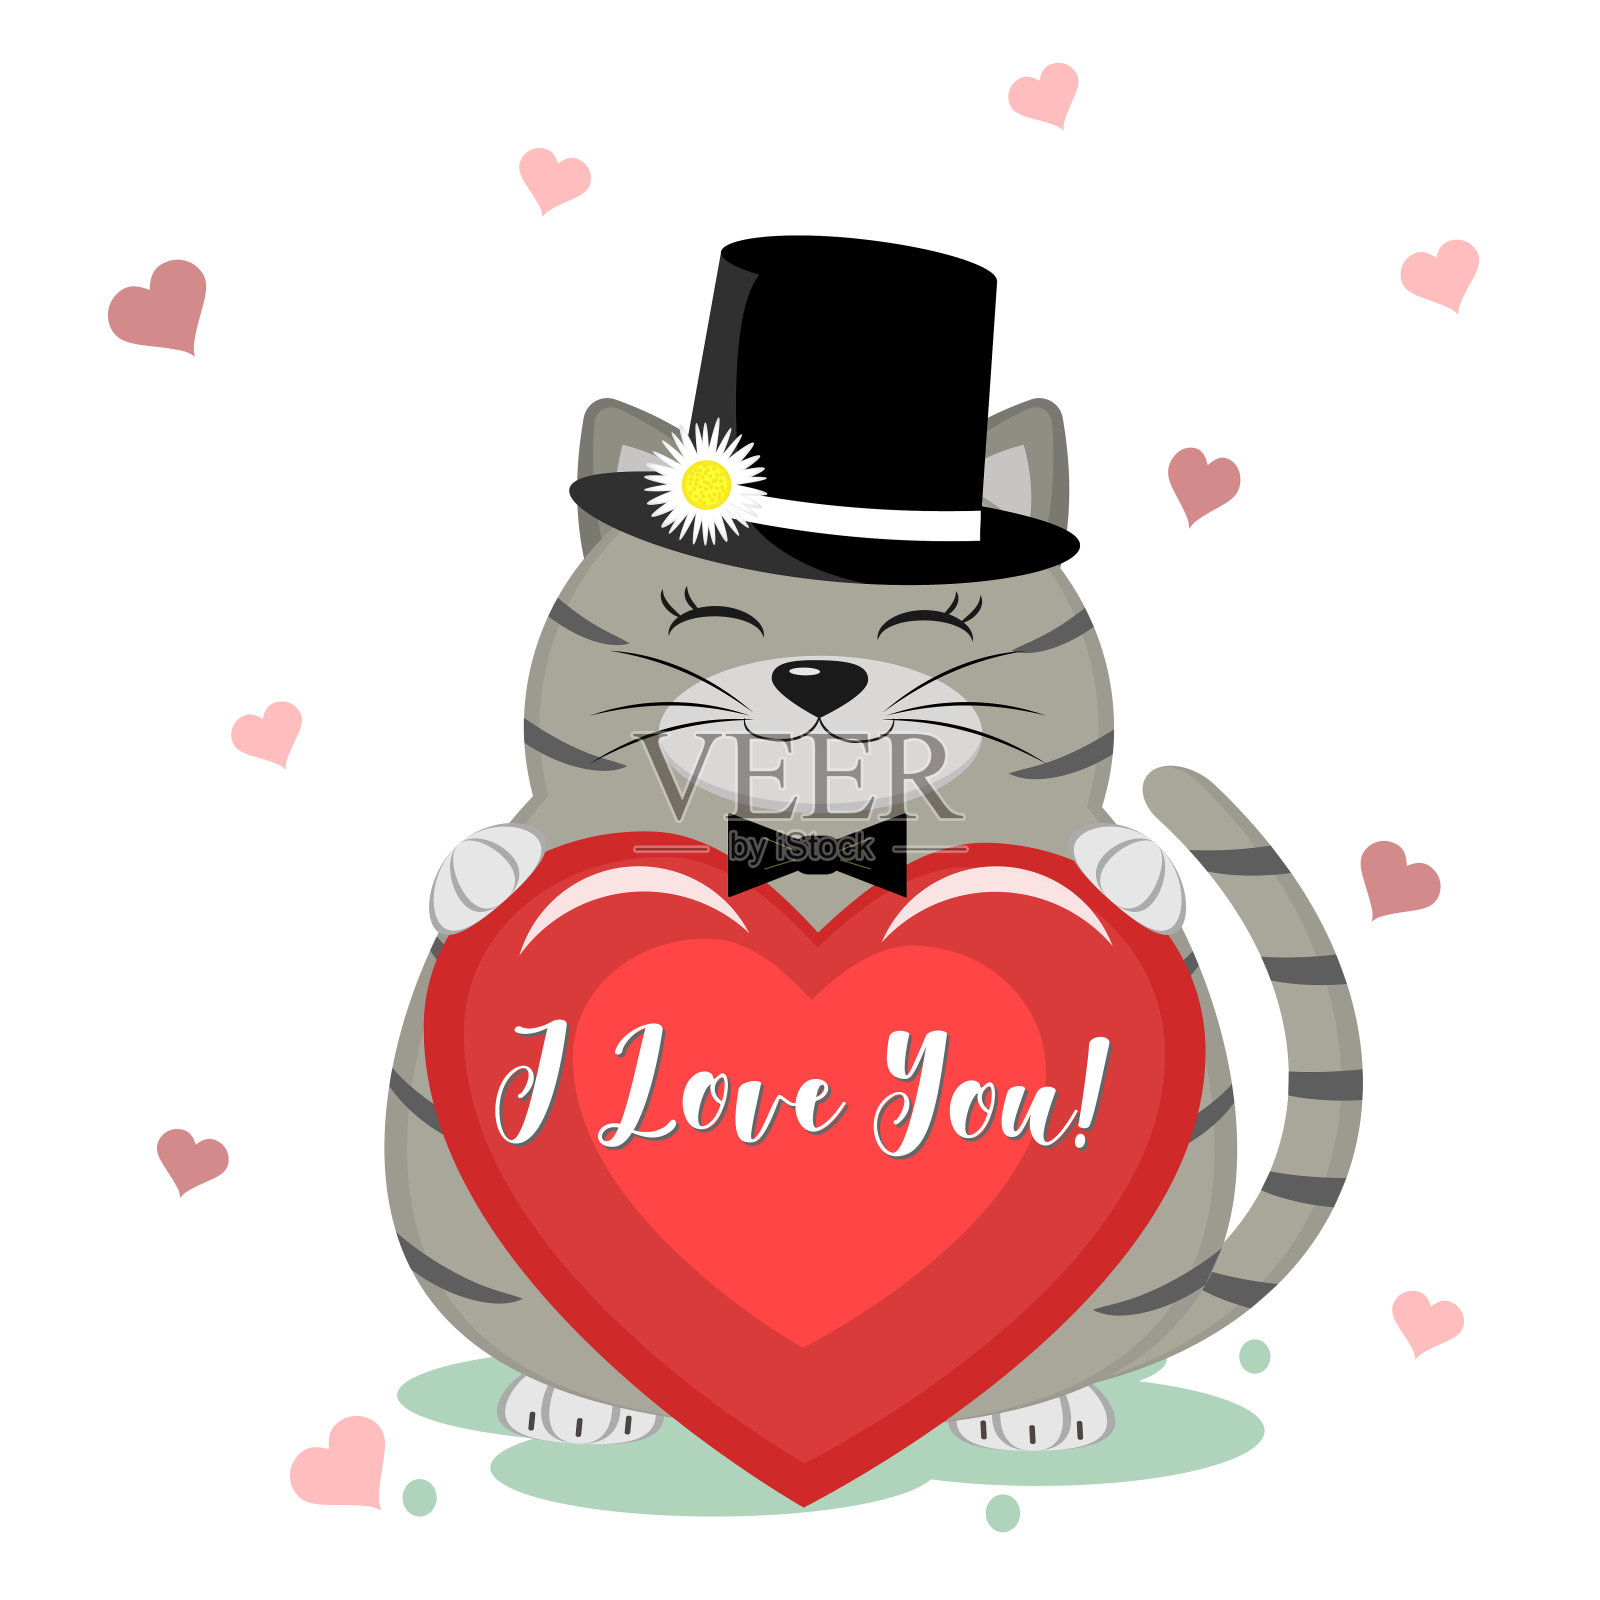 祝贺你，情人节快乐!一只可爱的灰猫戴着黑色的帽子，打着领结，坐在那里，爪子上拿着一颗红色的心。平面设计，卡通风格，矢量插画图片素材